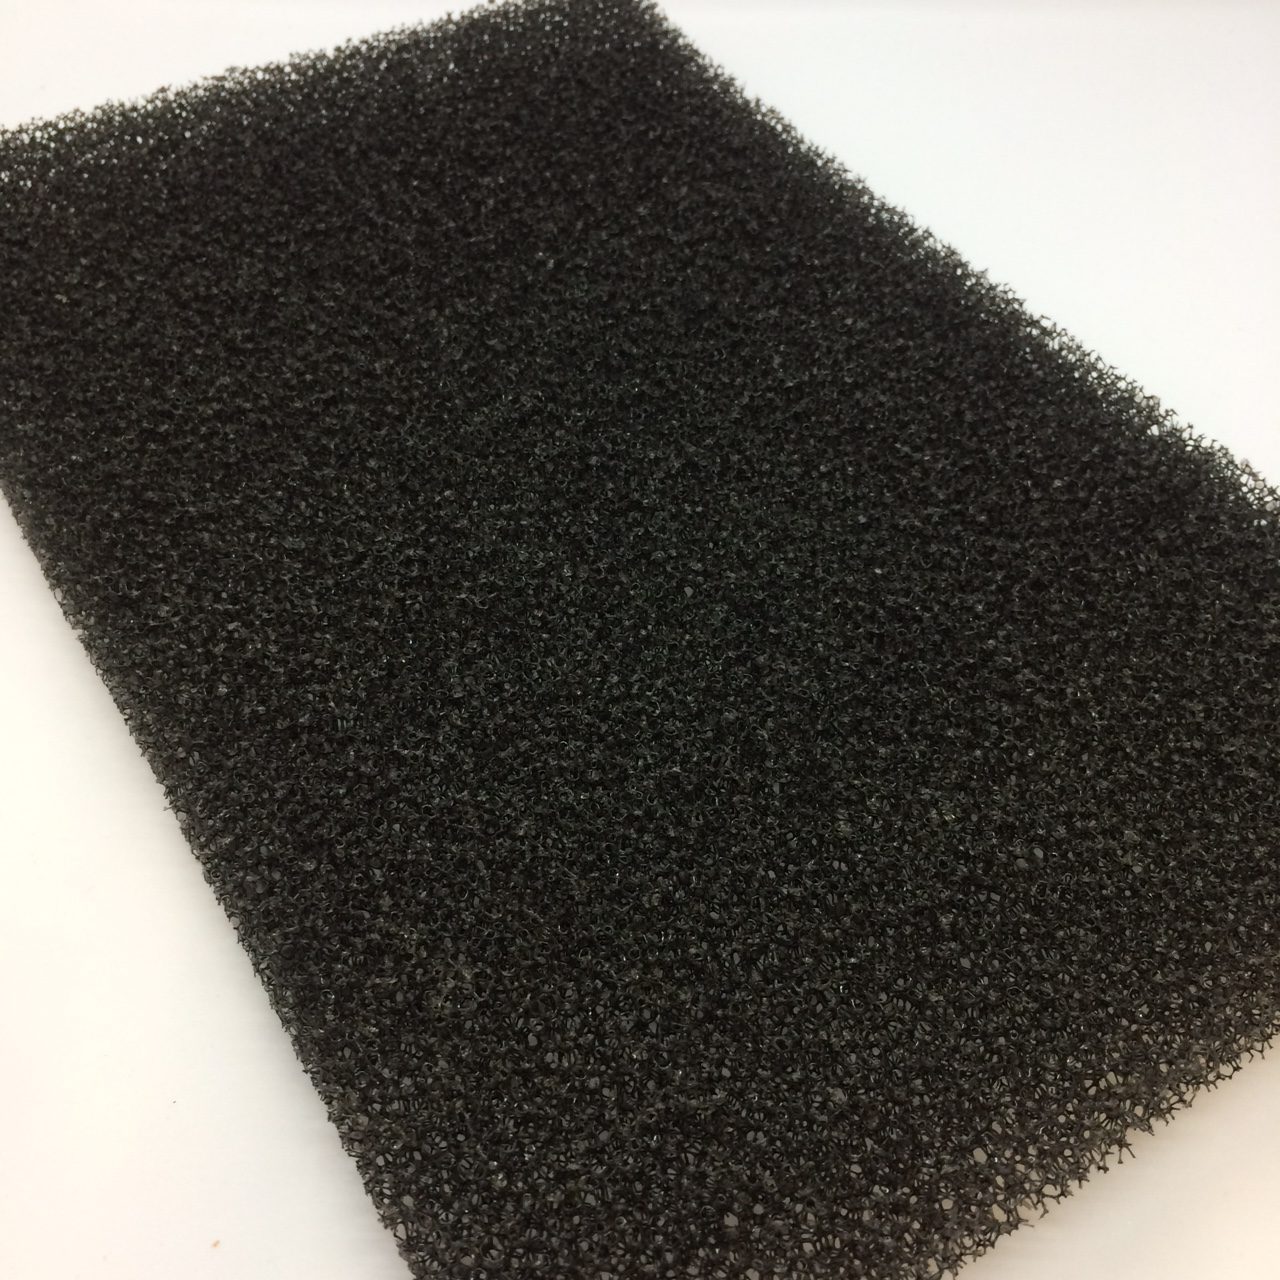 Mousse plaque filtre, noire, plaque 200x100 cm